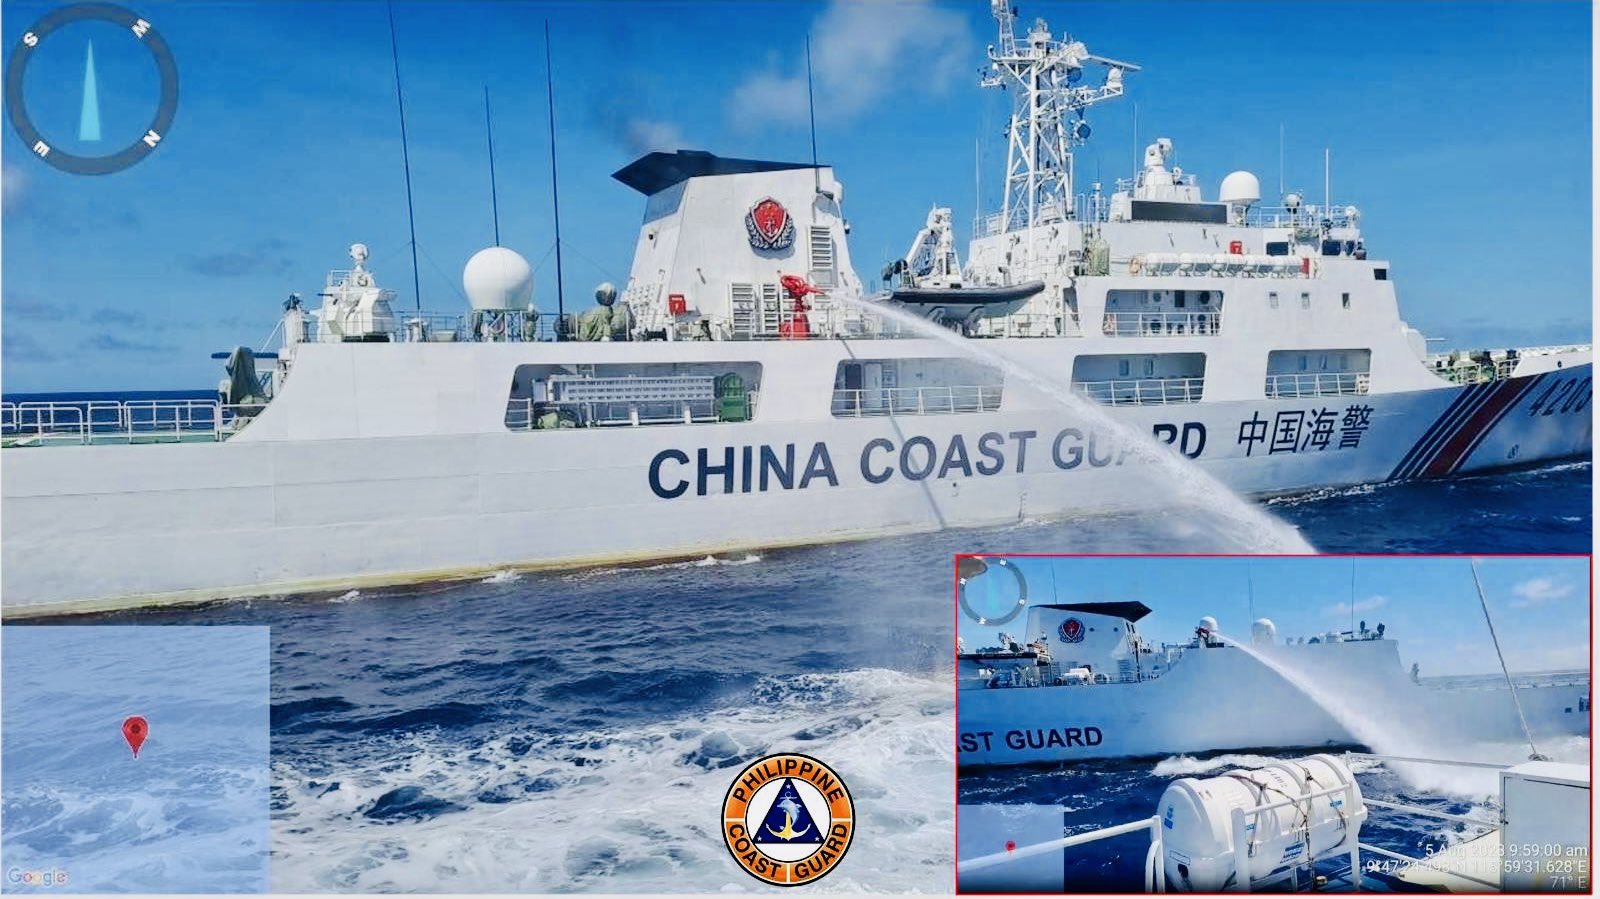 EN VIDEO: el momento en que un buque chino disparó su cañón de agua contra un barco de la Guardia Costera de Filipinas